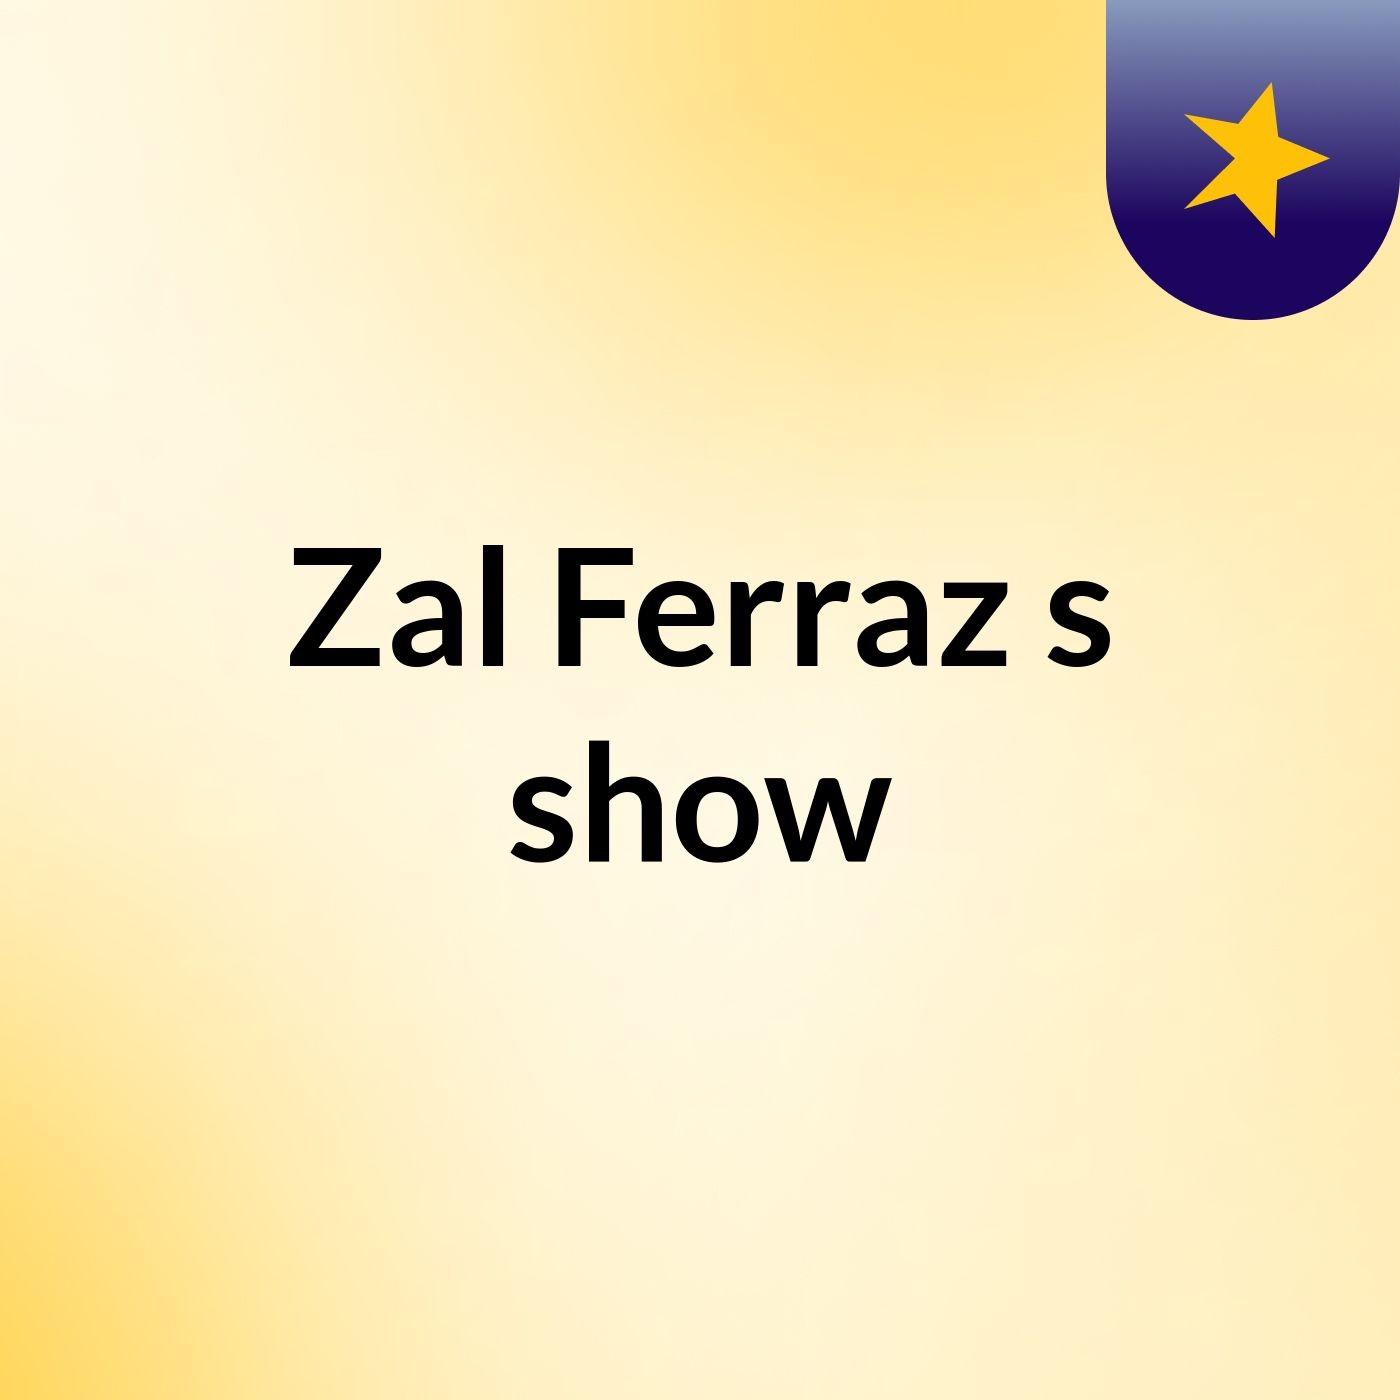 Zal Ferraz's show